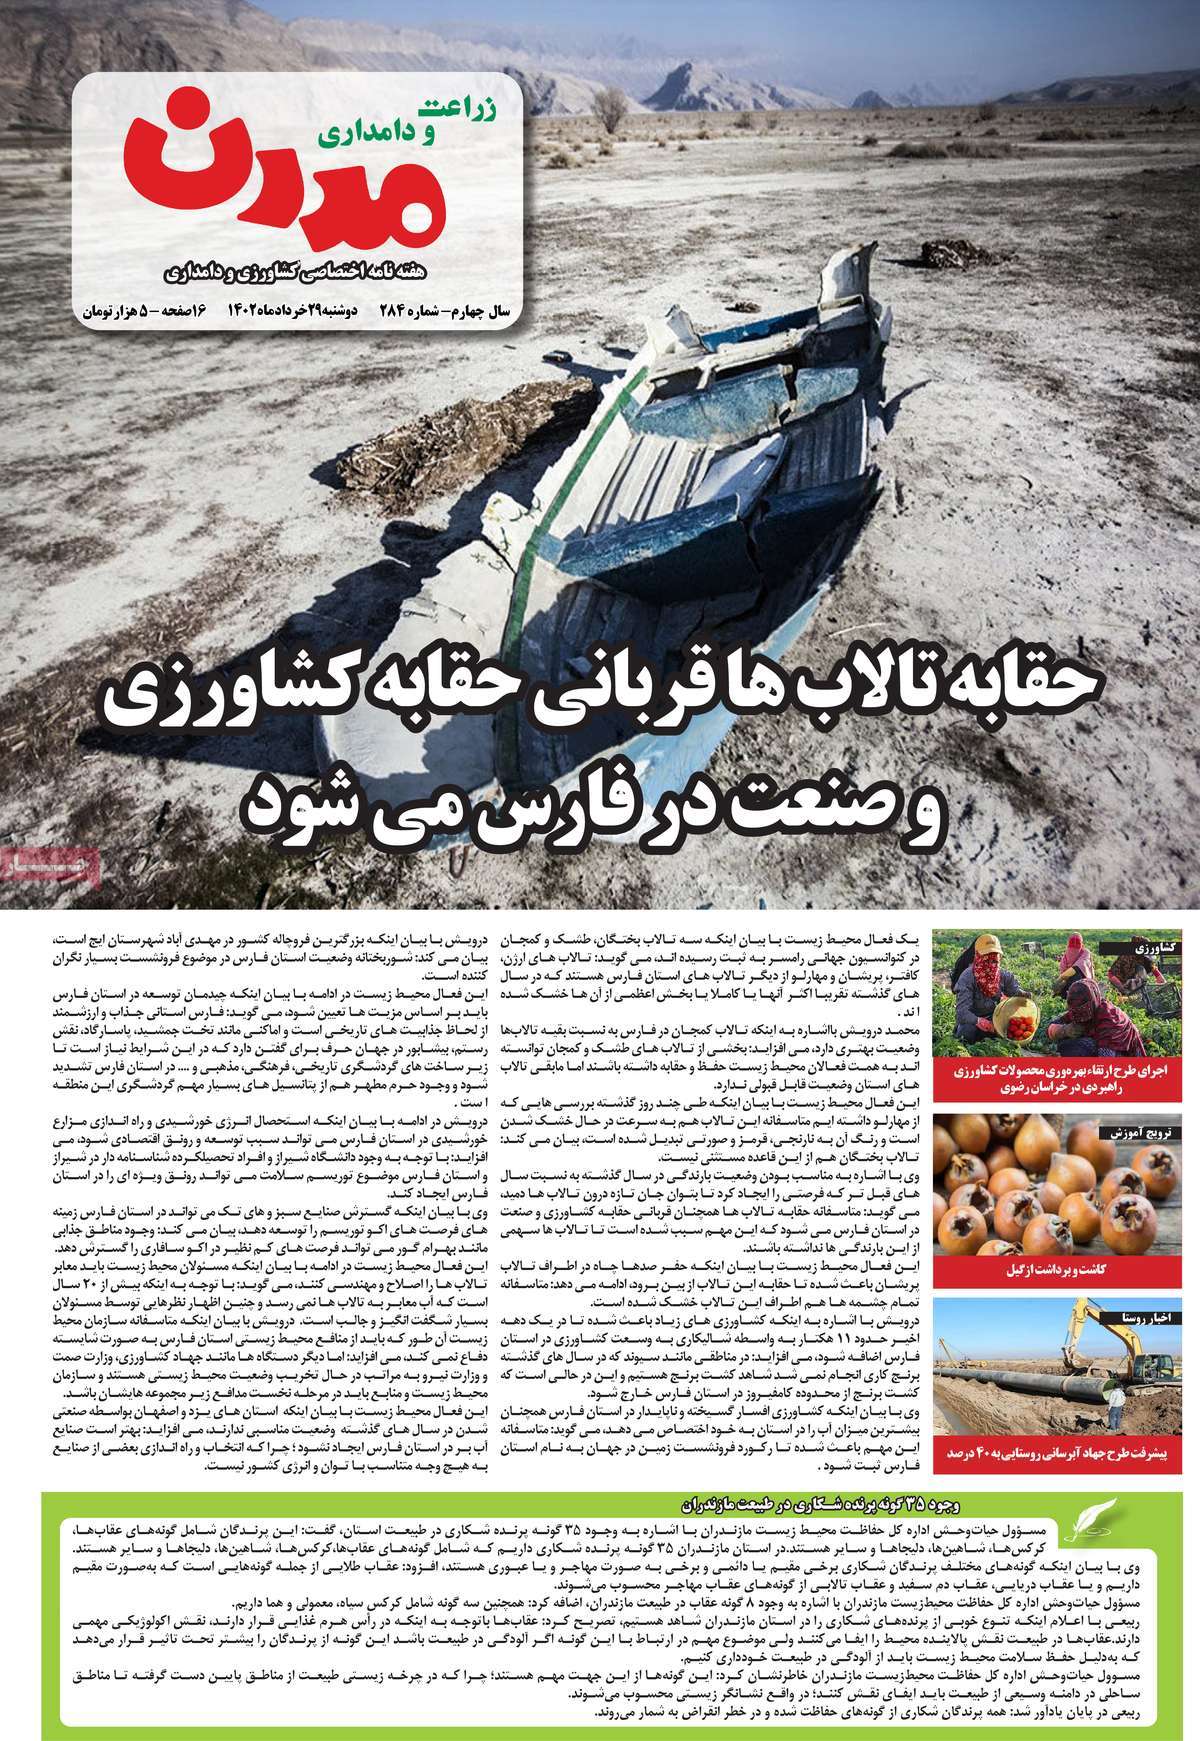 صفحه نخست مجله زراعت و دامداری مدرن - دوشنبه, ۲۹ خرداد ۱۴۰۲